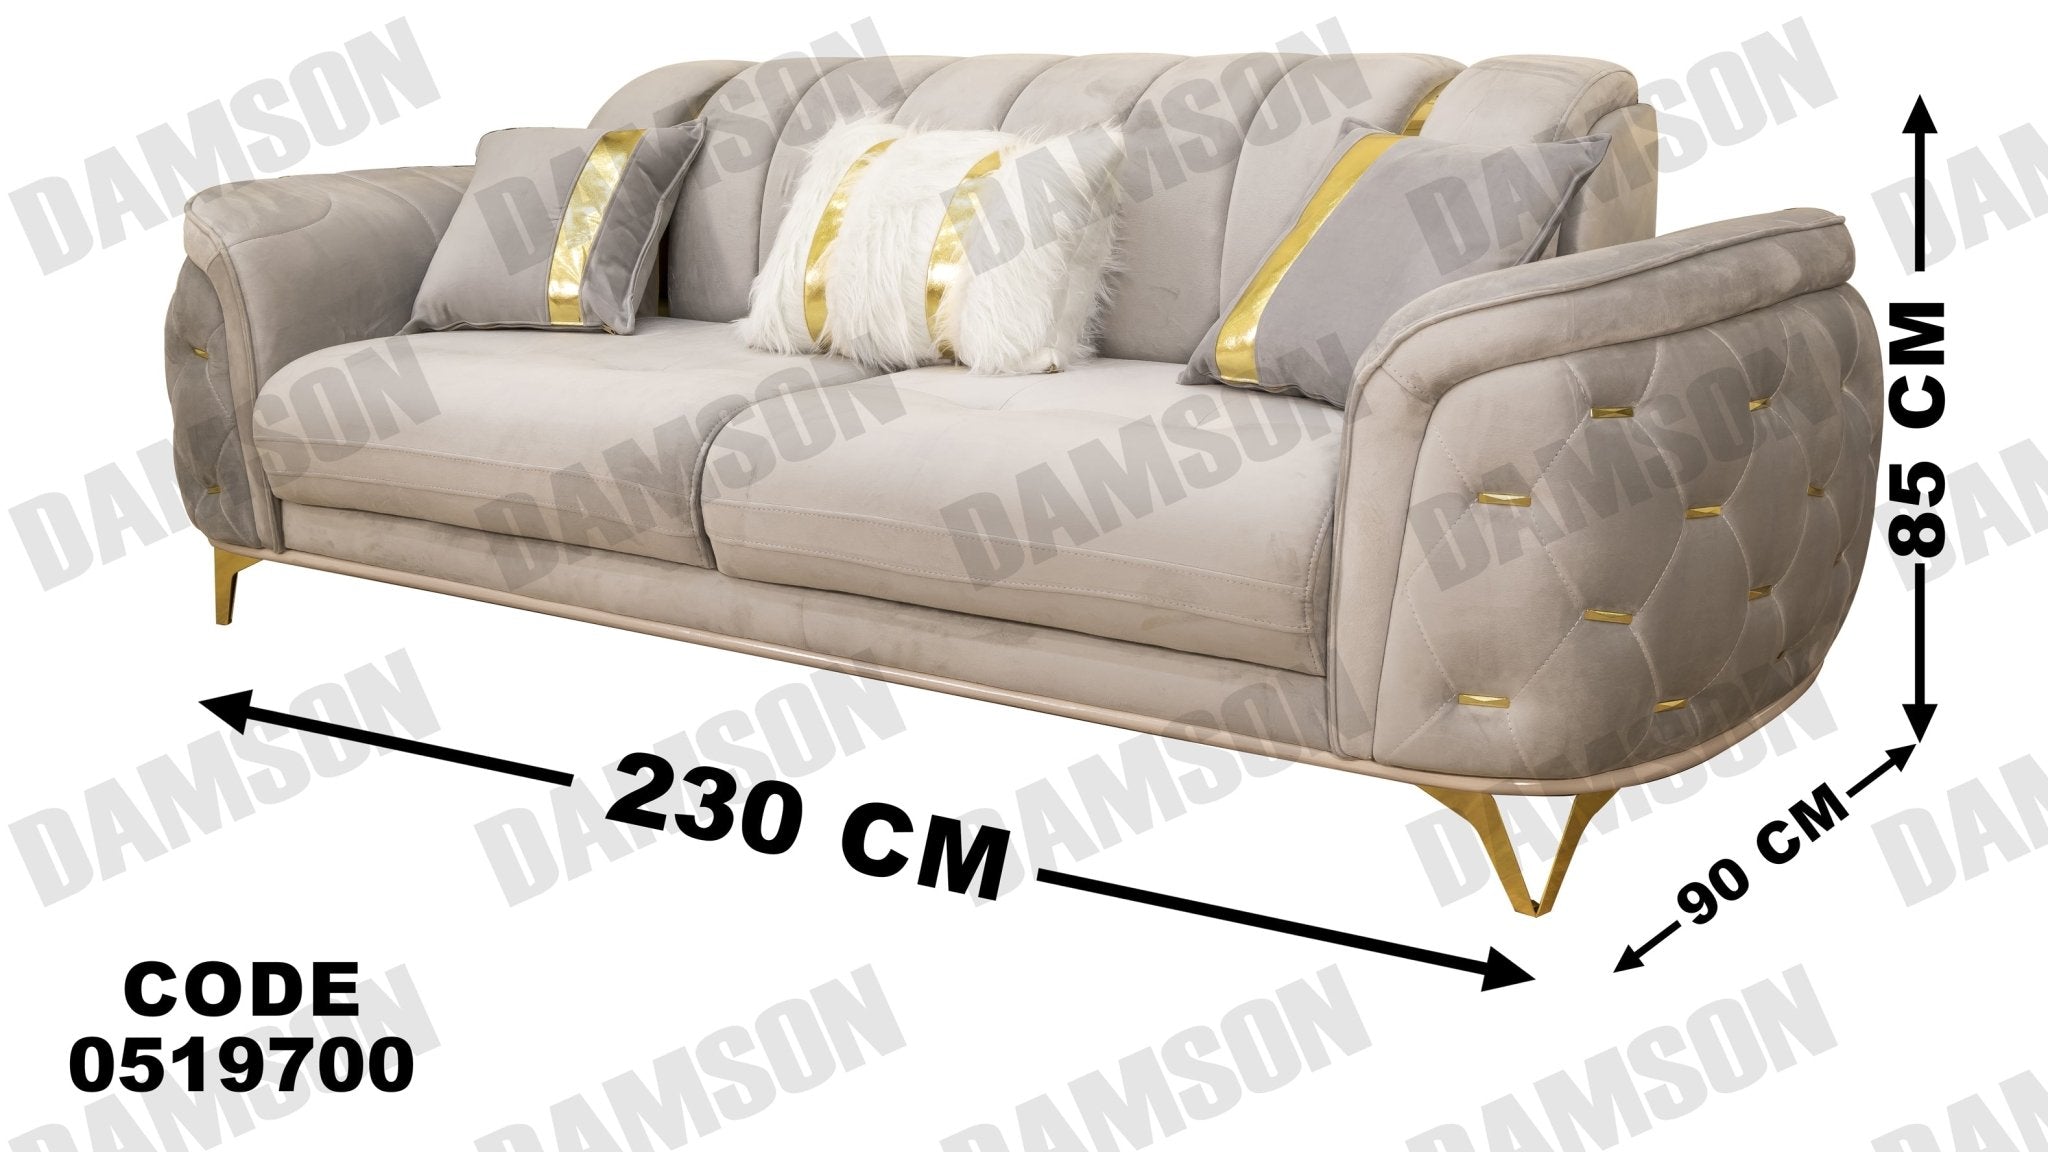 انترية 197 - Damson Furnitureانترية 197